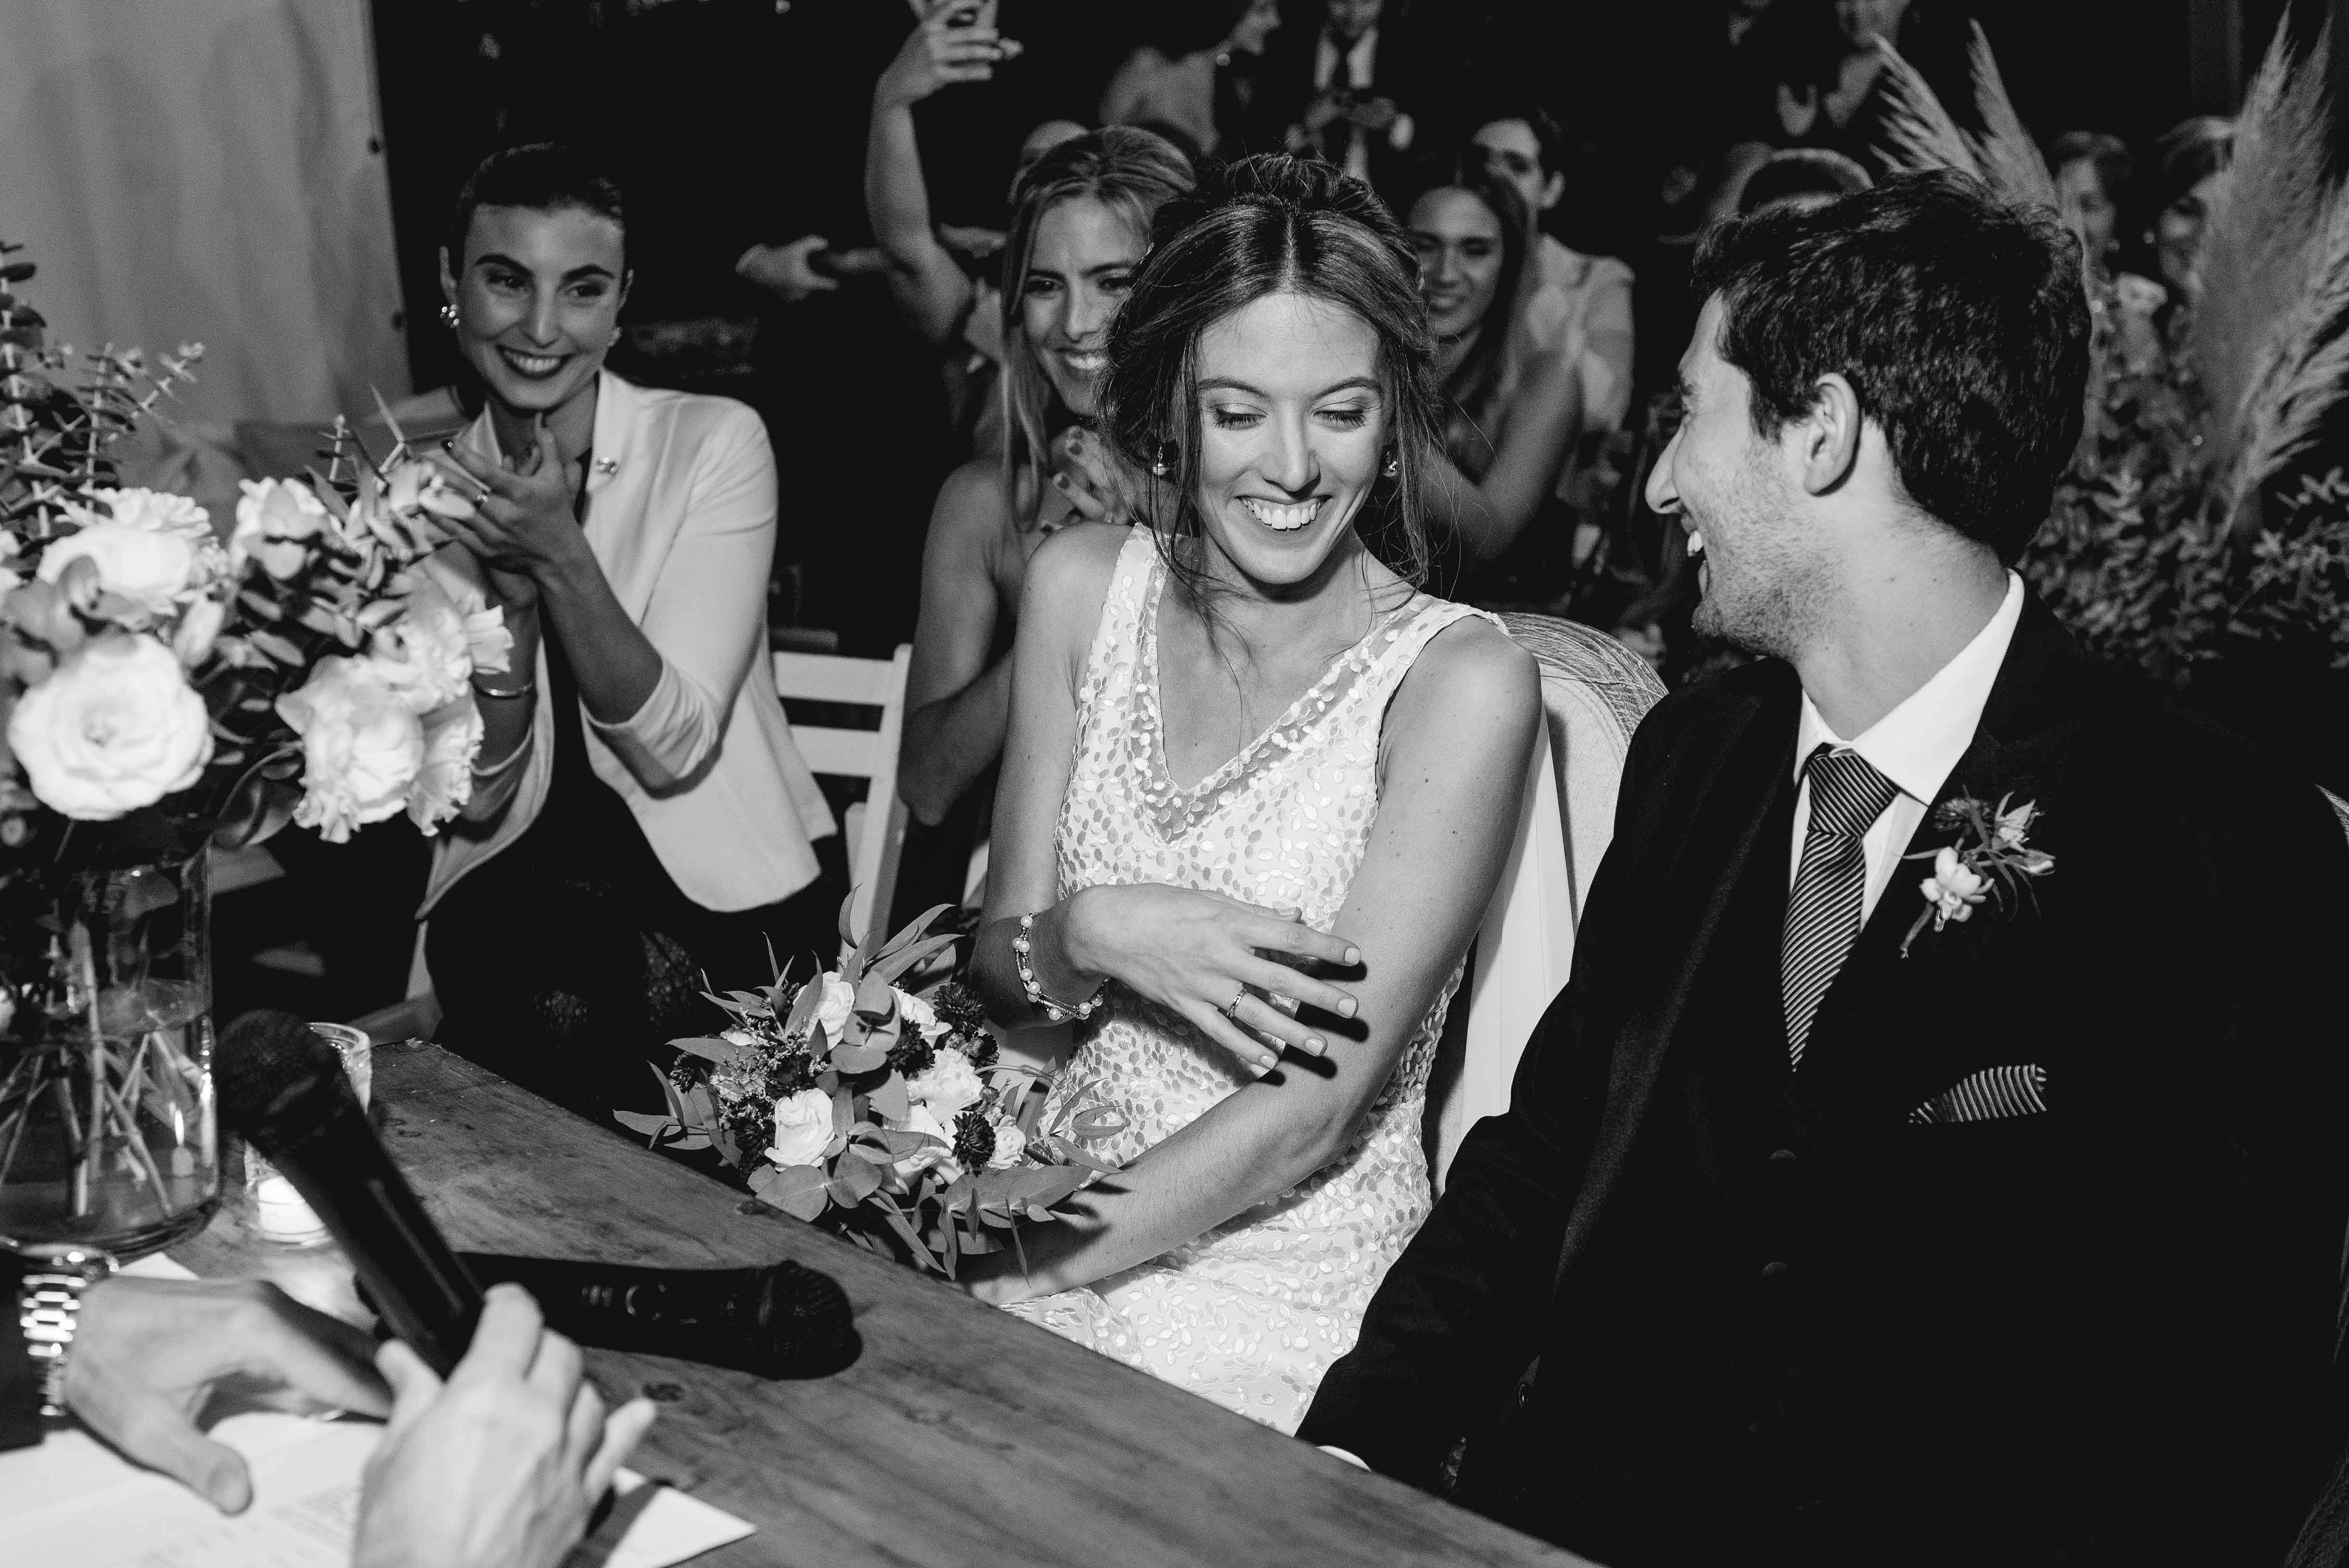 Fotos de la boda de Mili y Lechi en Rosario Realizadas por Bucle Fotografias Flor Bosio y Caro Clerici